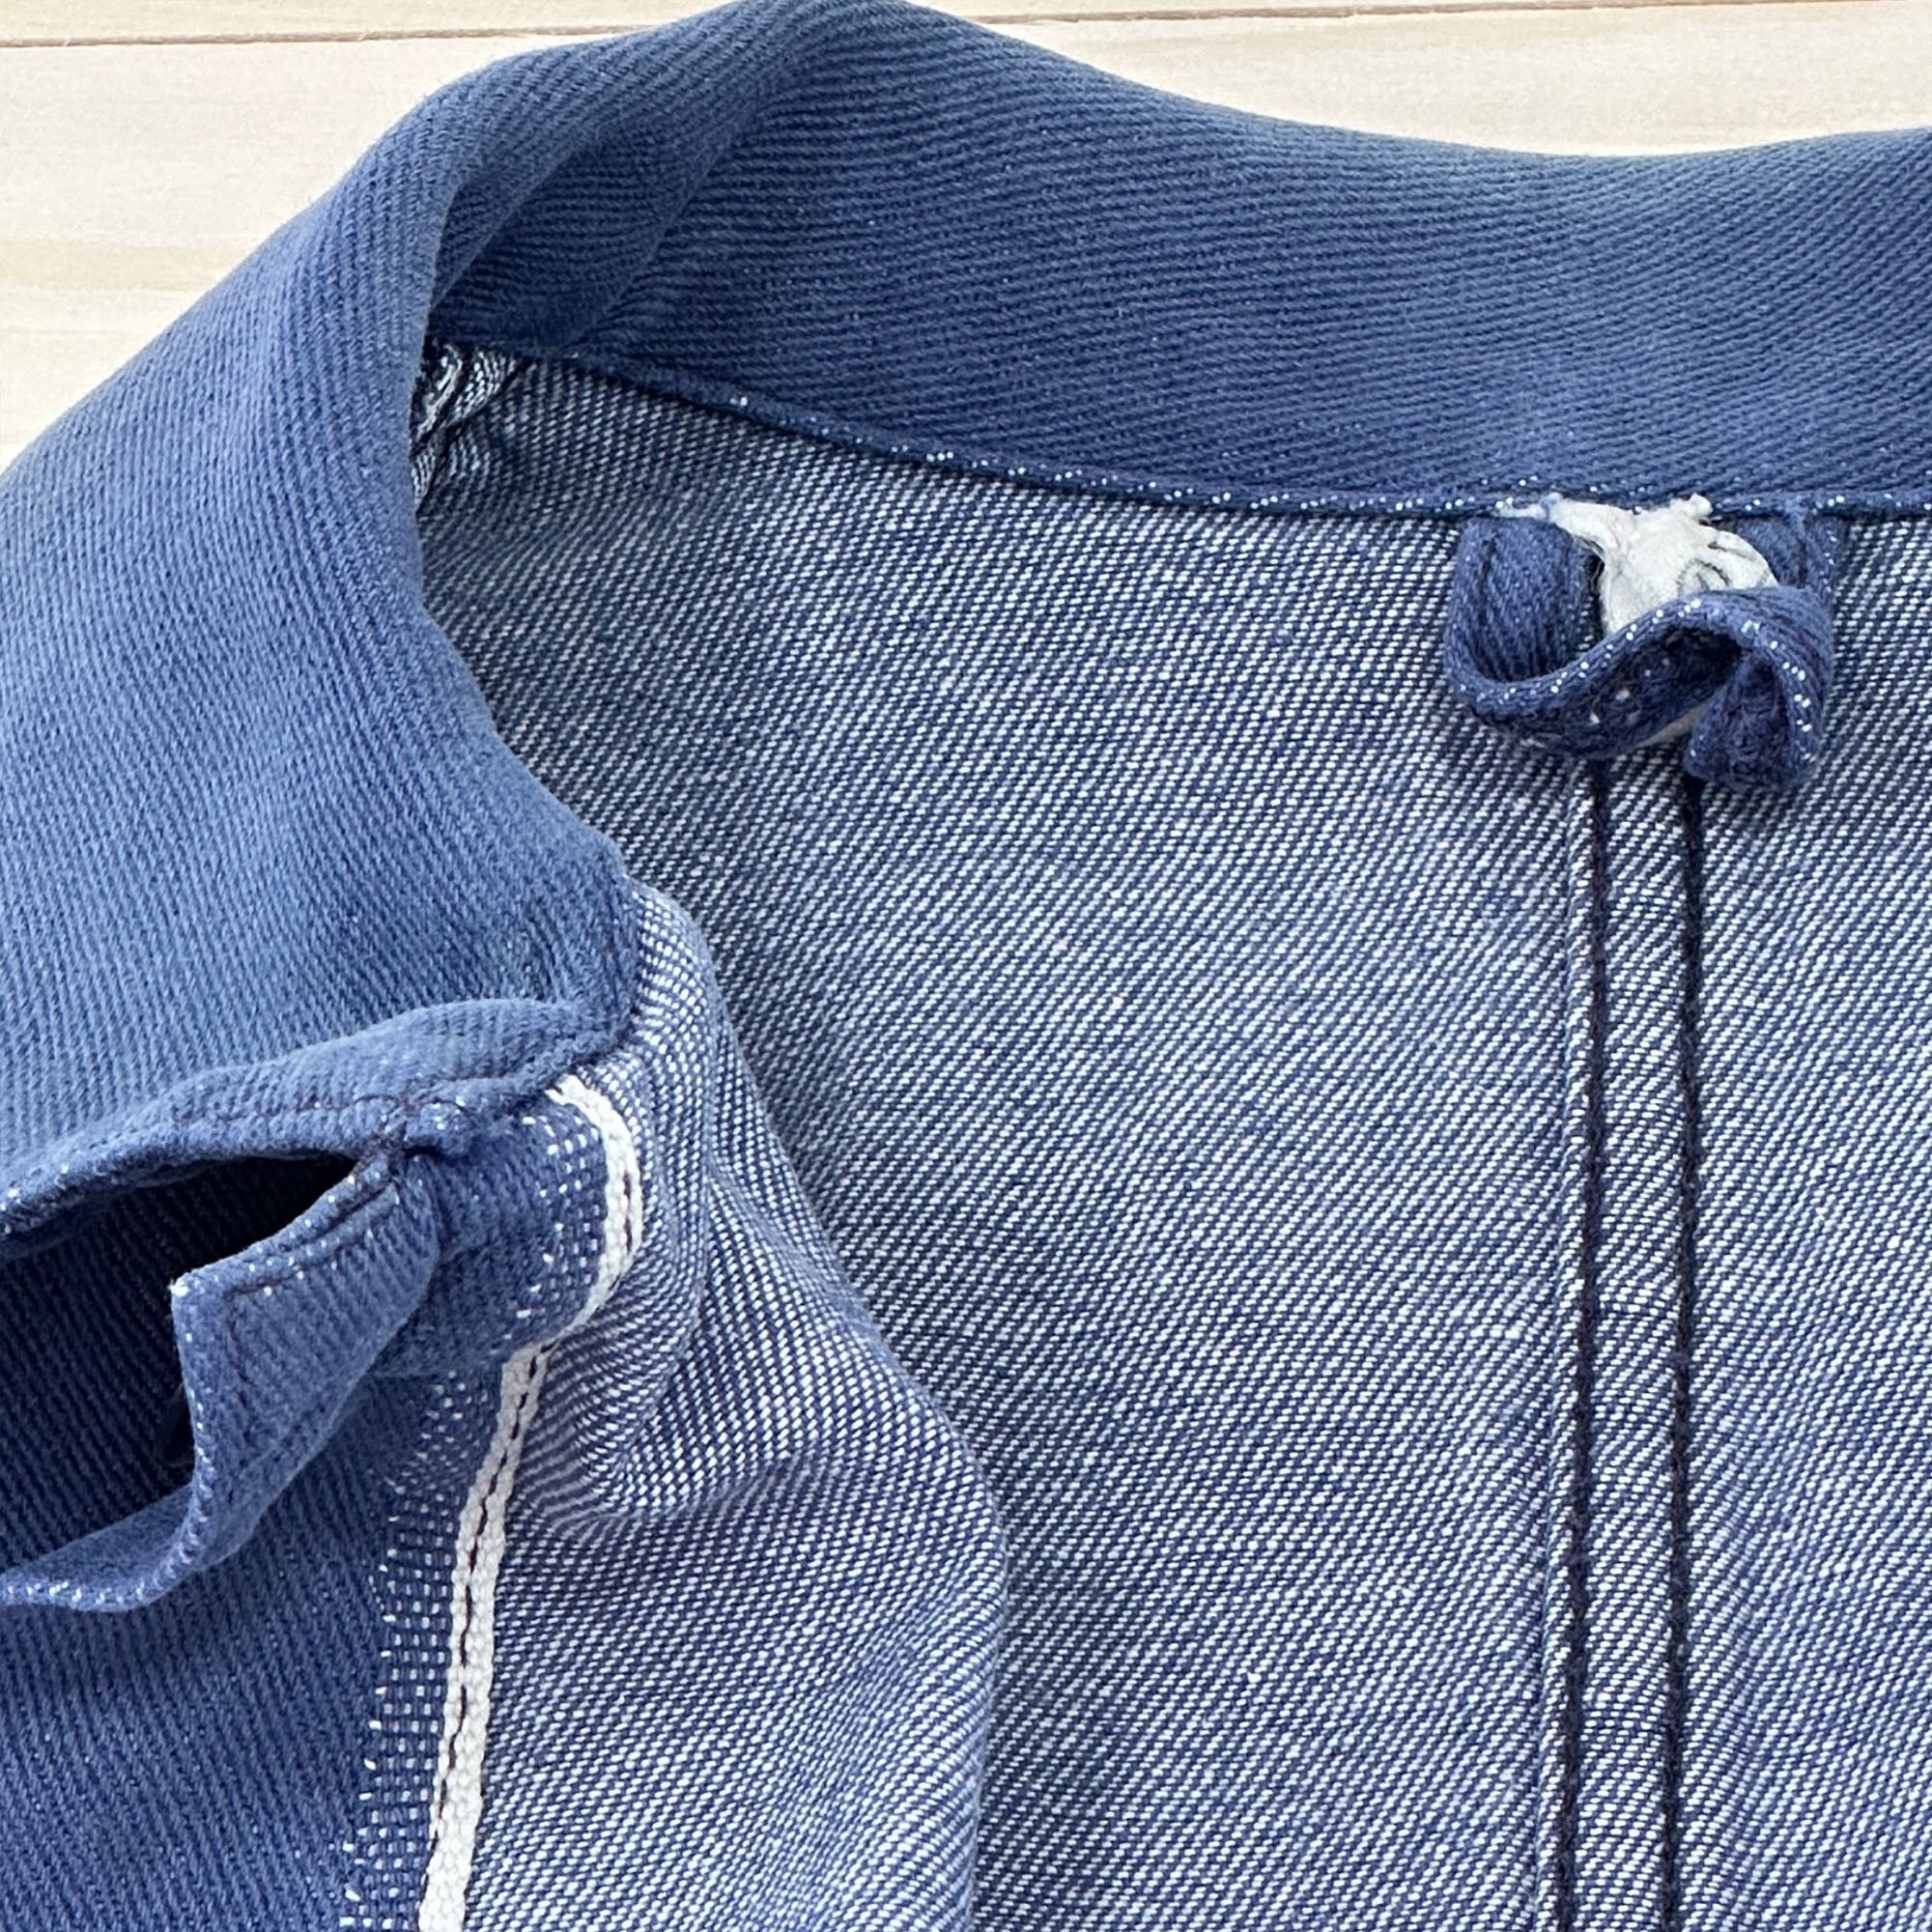 Distressed Vintage Krähe Blue Work Jacket - Women's Medium-2